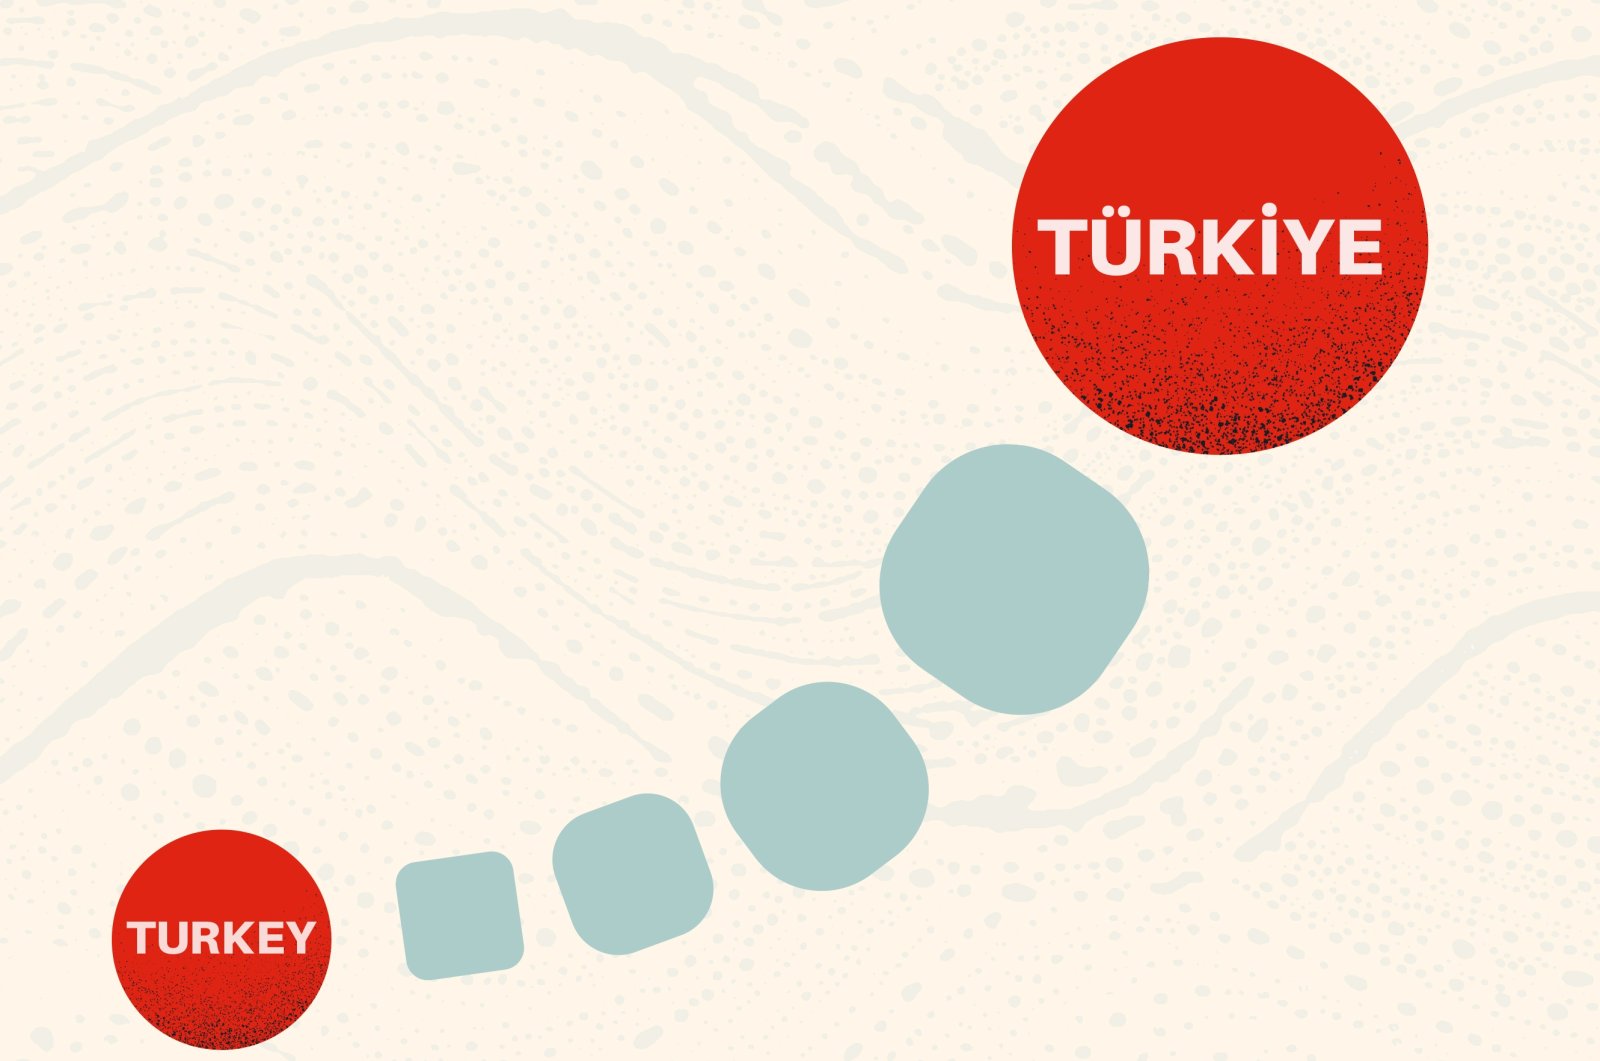 Turki ke Türkiye: Branding negara-bangsa modern